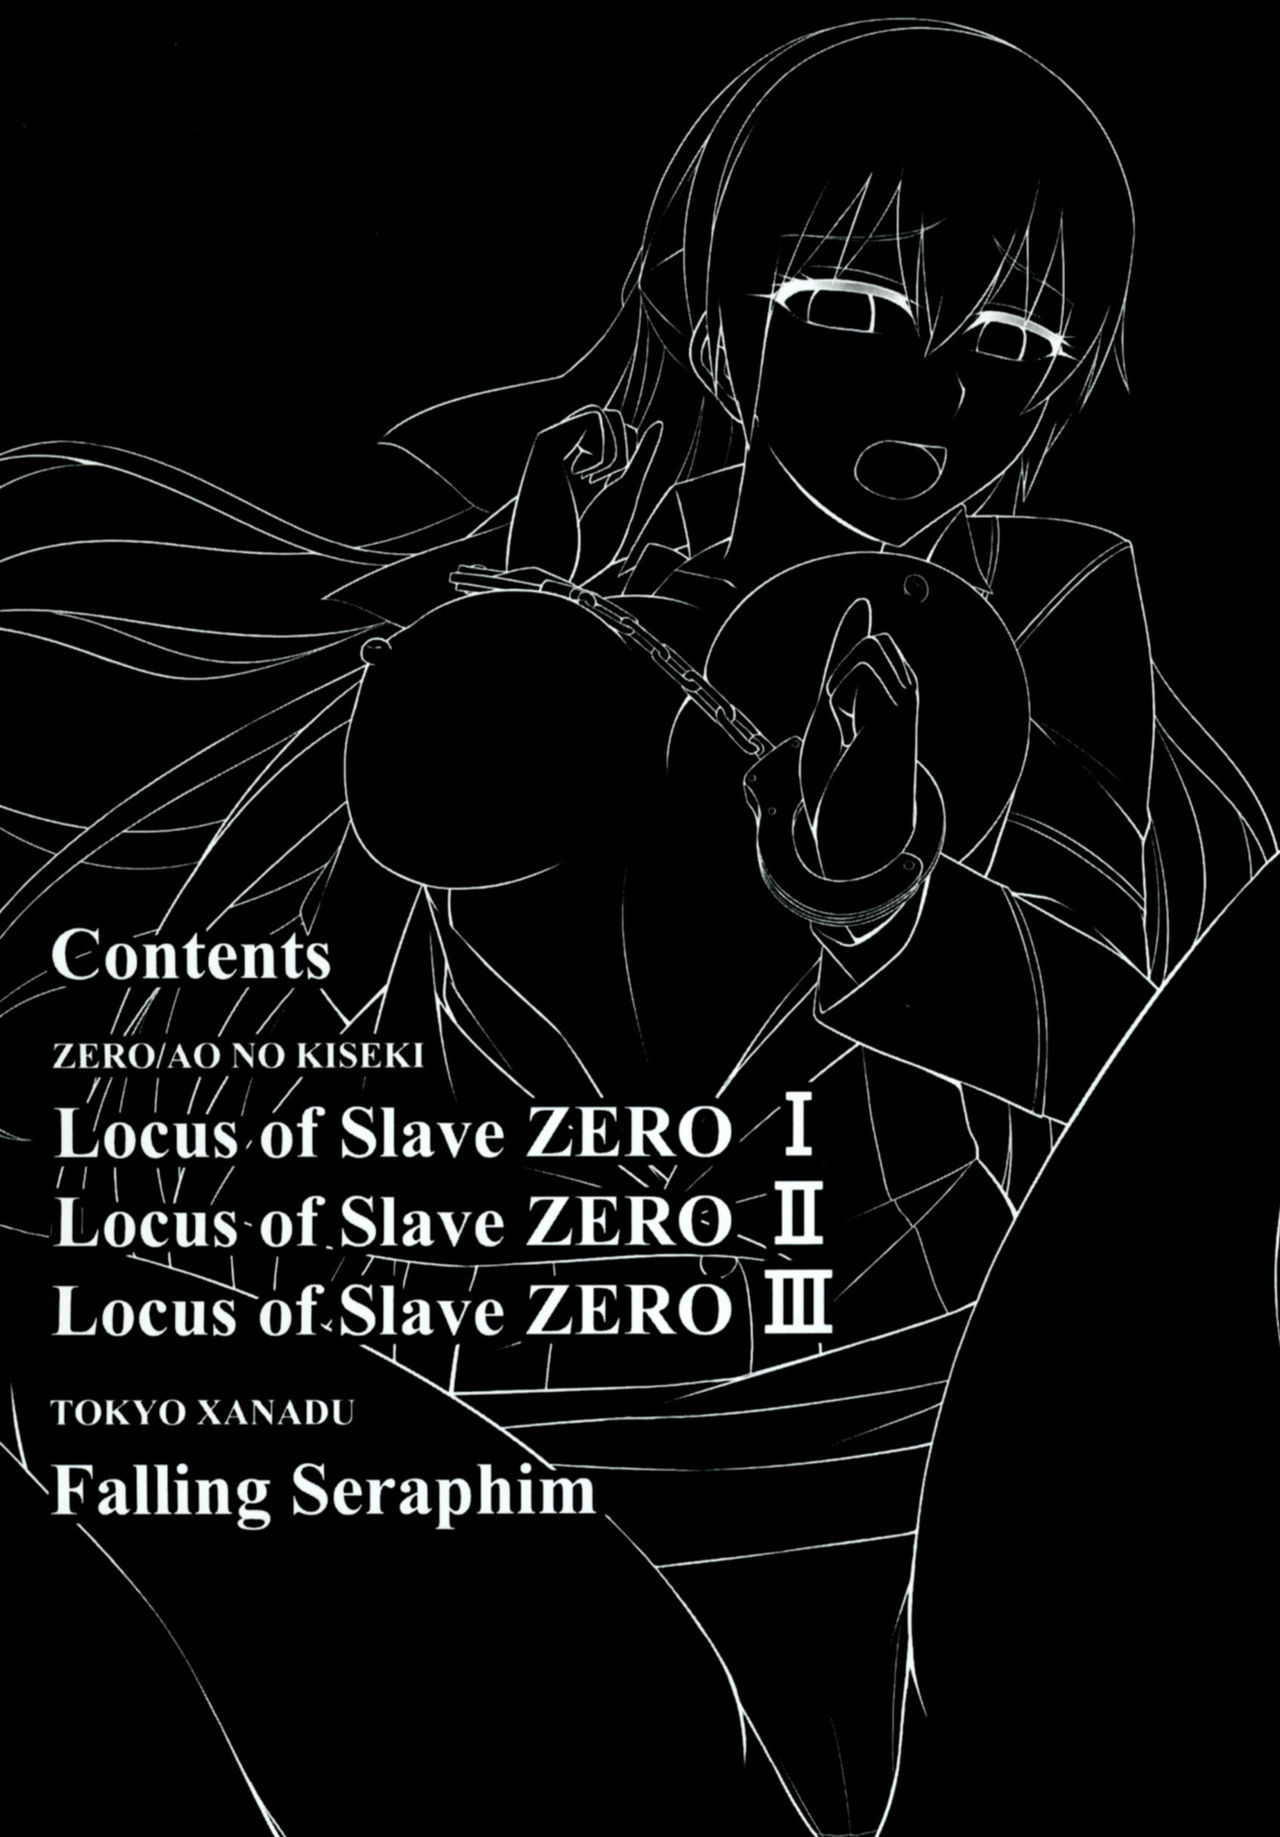 [ものらび (らび)] Locus of Slave ZERO (英雄伝説 零の軌跡、英雄伝説 碧の軌跡、東亰ザナドゥ) [DL版]